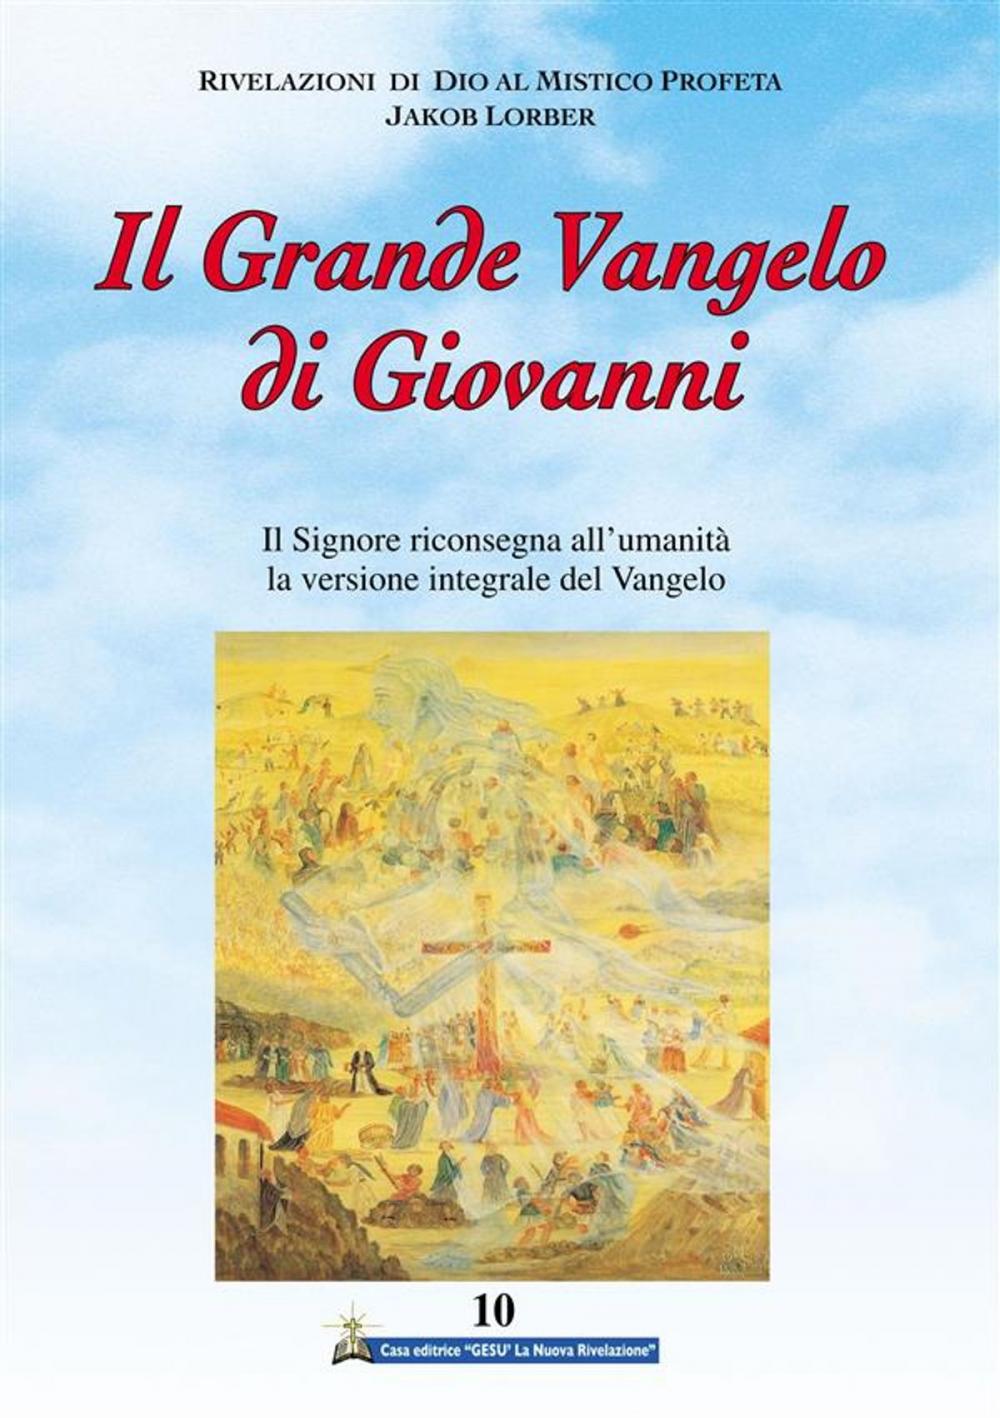 Big bigCover of Il Grande Vangelo di Giovanni 10° volume